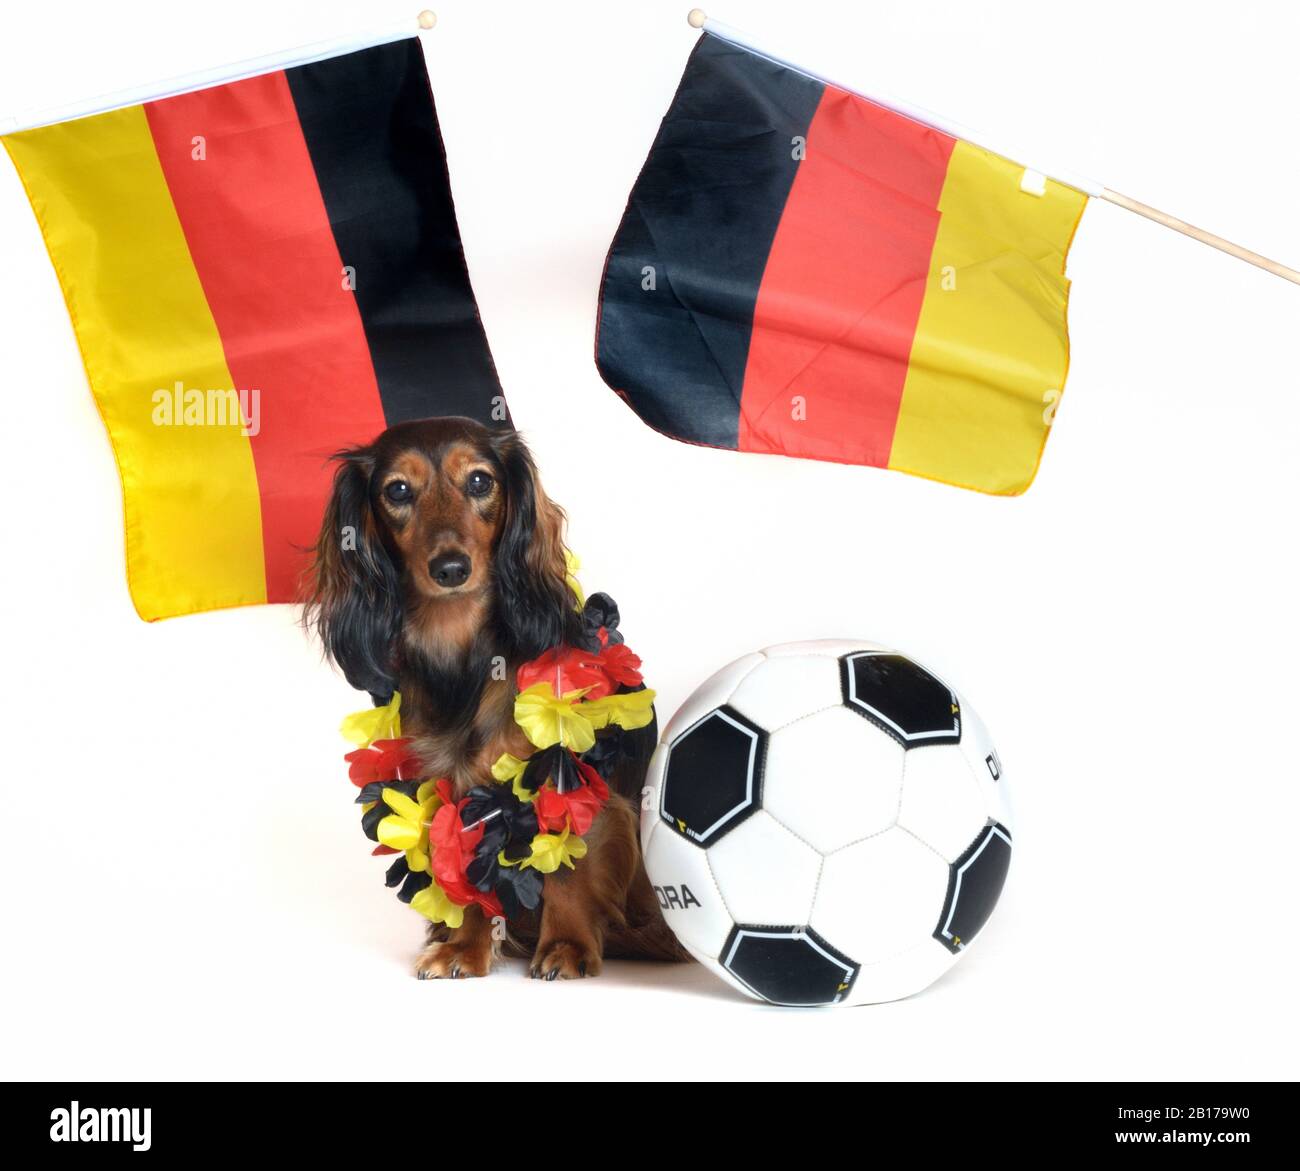 Dachshund à poil long, chien de saucisse à poil long, chien domestique (Canis lupus F. familiaris), fan de football allemand, vue avant Banque D'Images